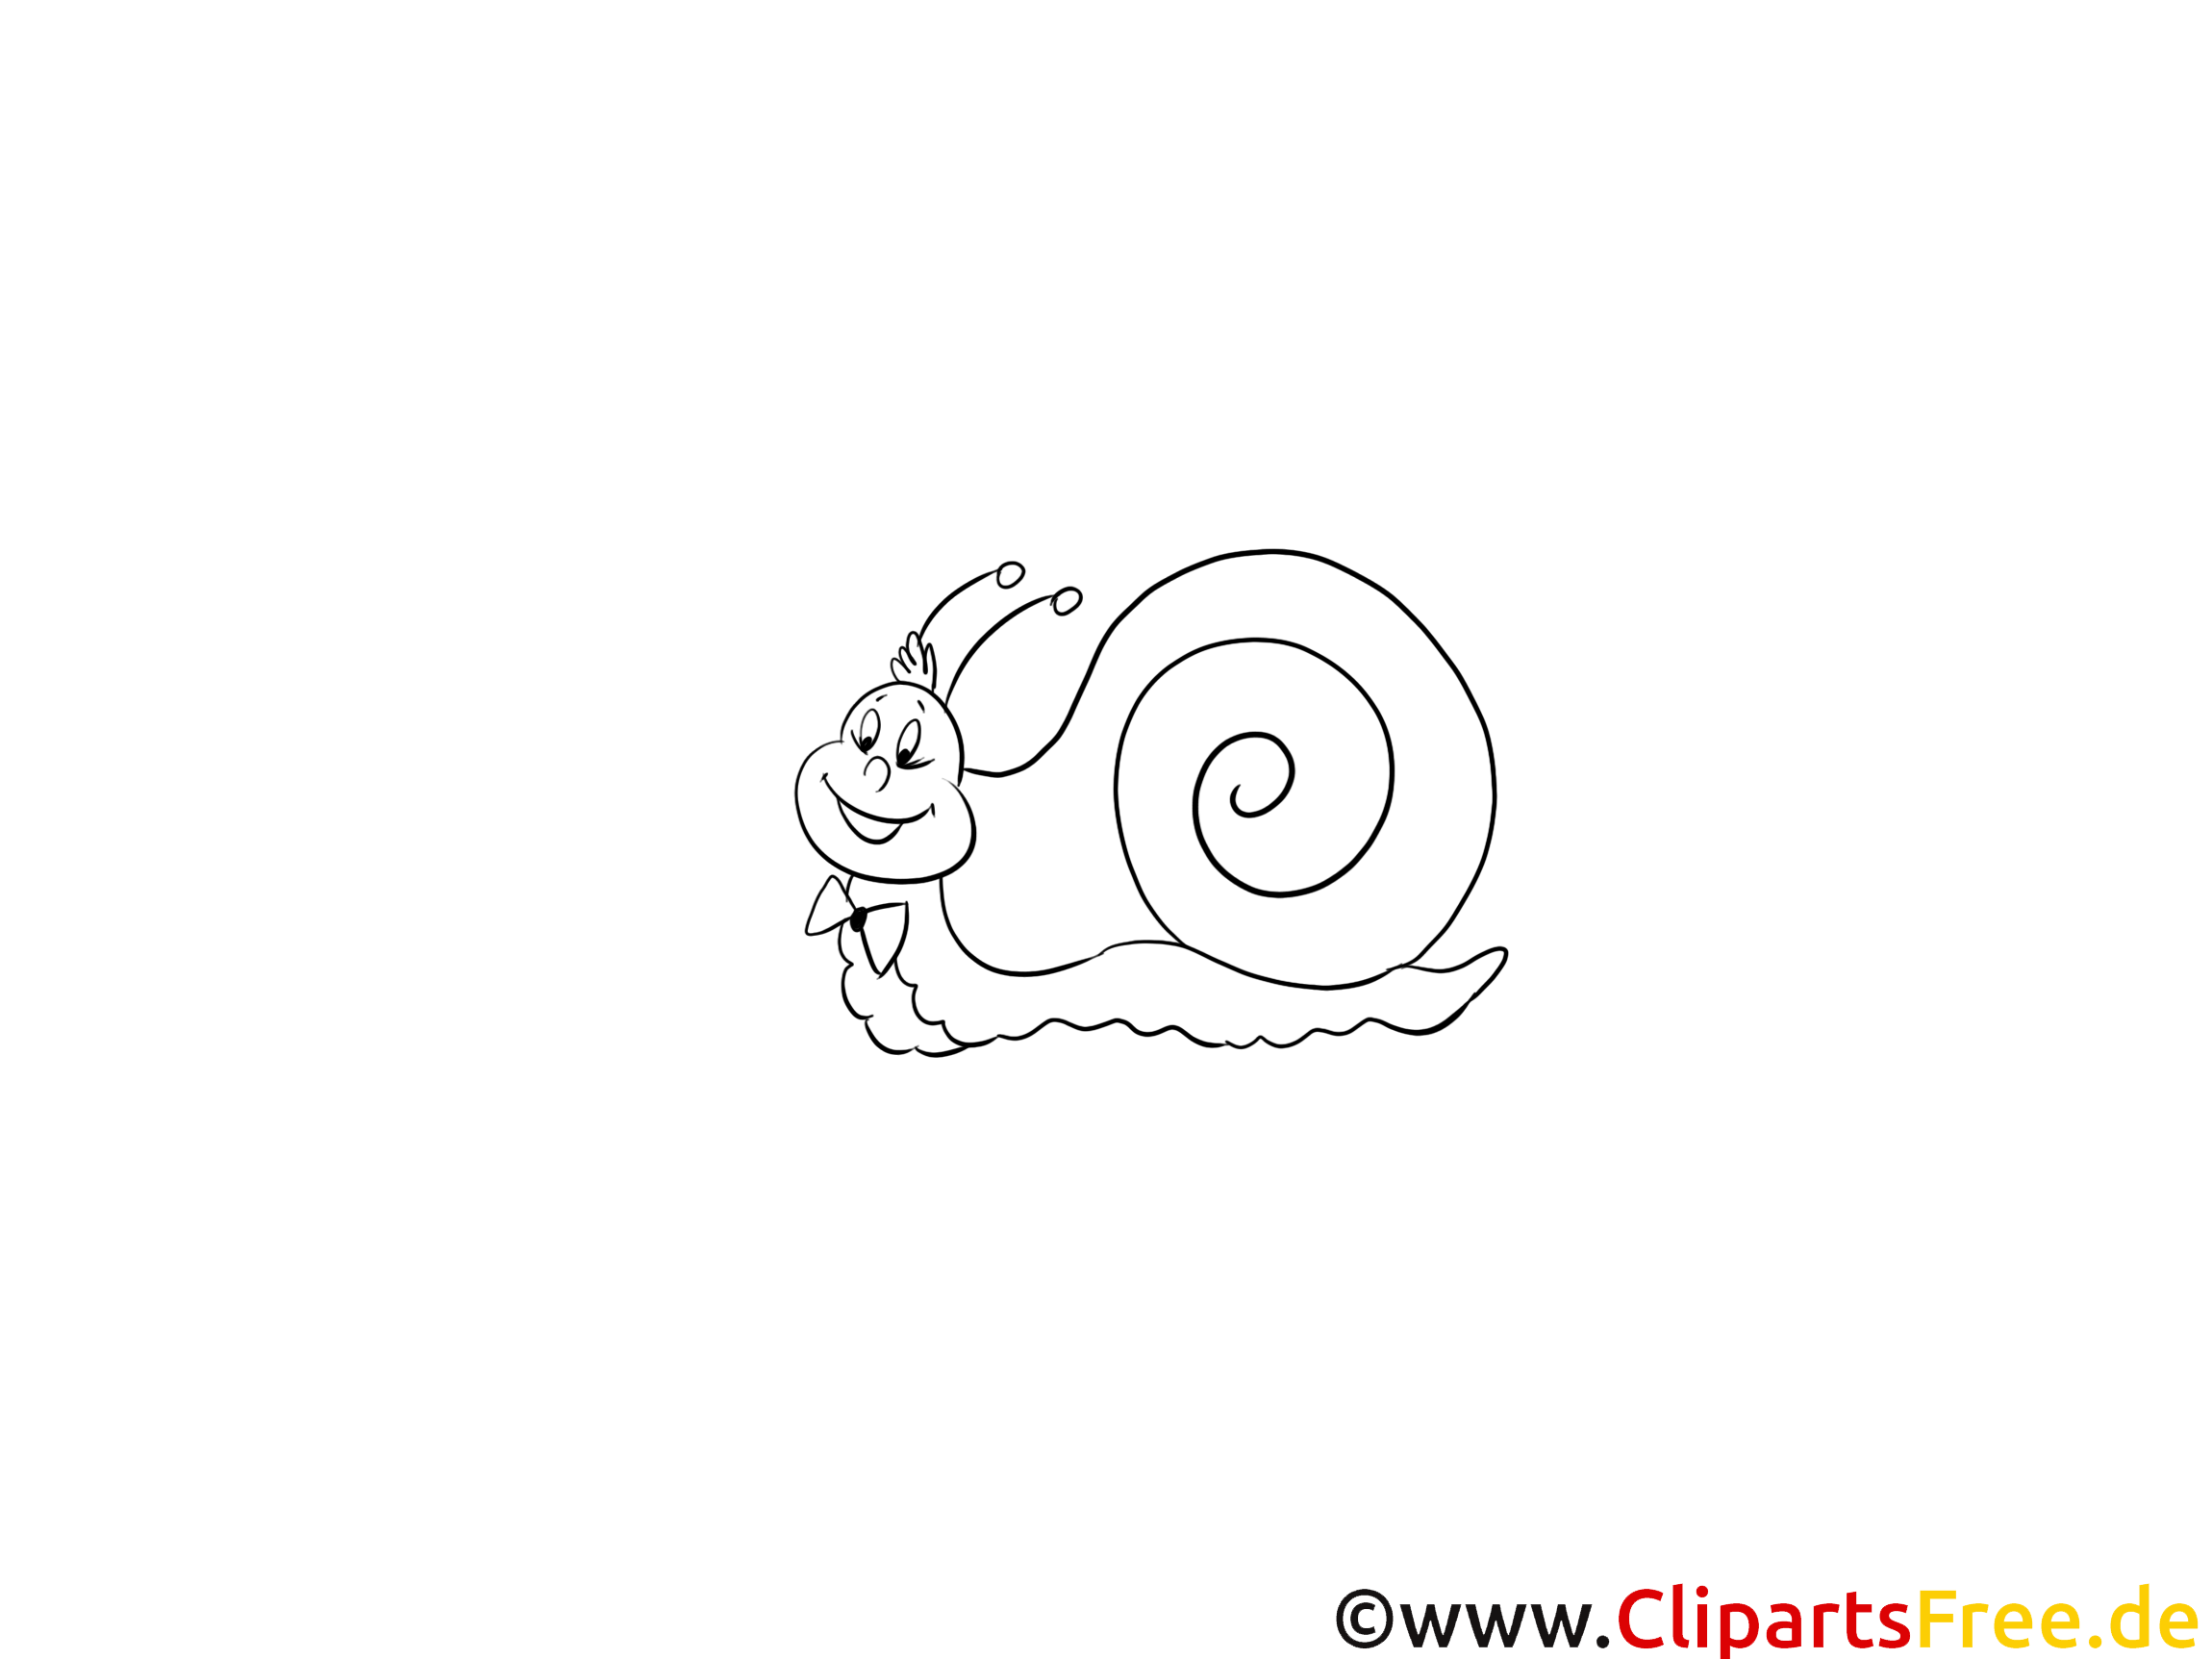 Escargot images gratuites – Animal à colorier